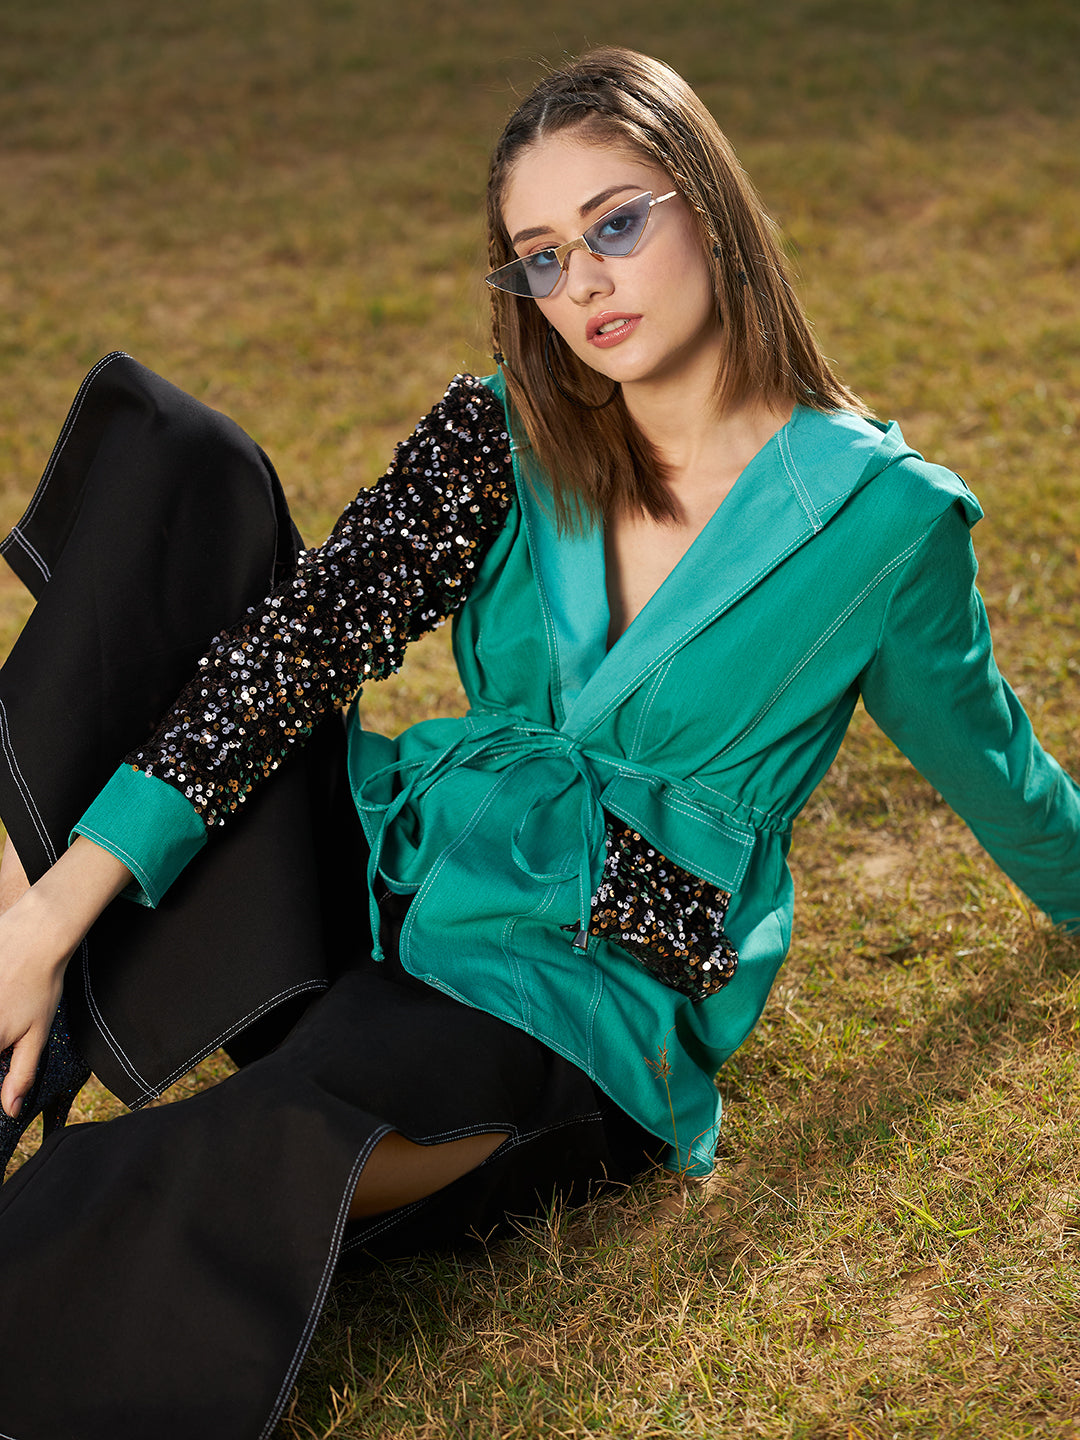 Athena Women Colourblocked Cotton Longline Outdoor Tailored Jacket - Athena Lifestyle